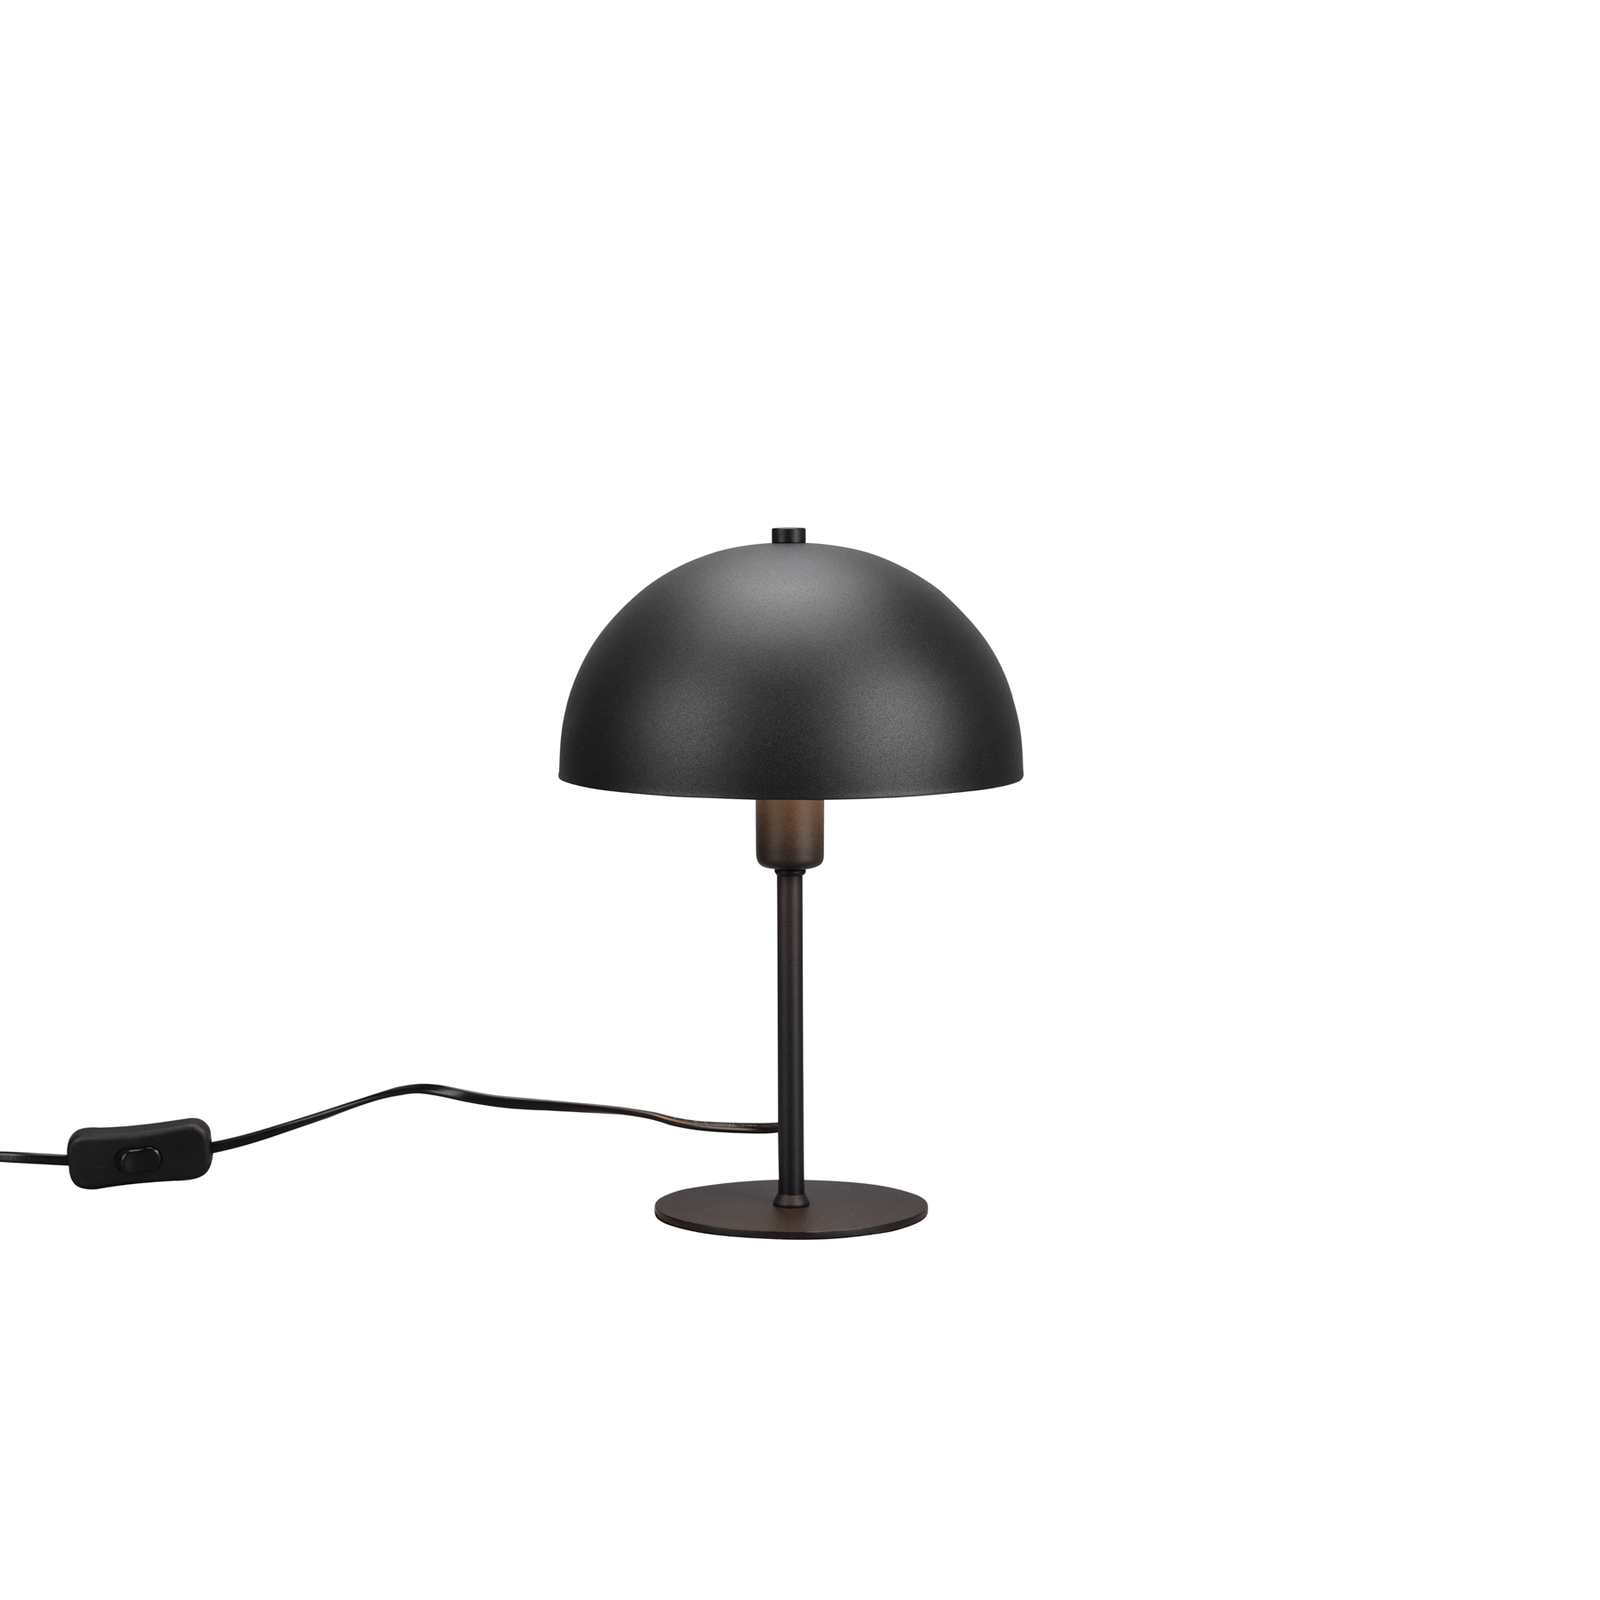 Nola asztali lámpa, magasság 30 cm, fekete/arany